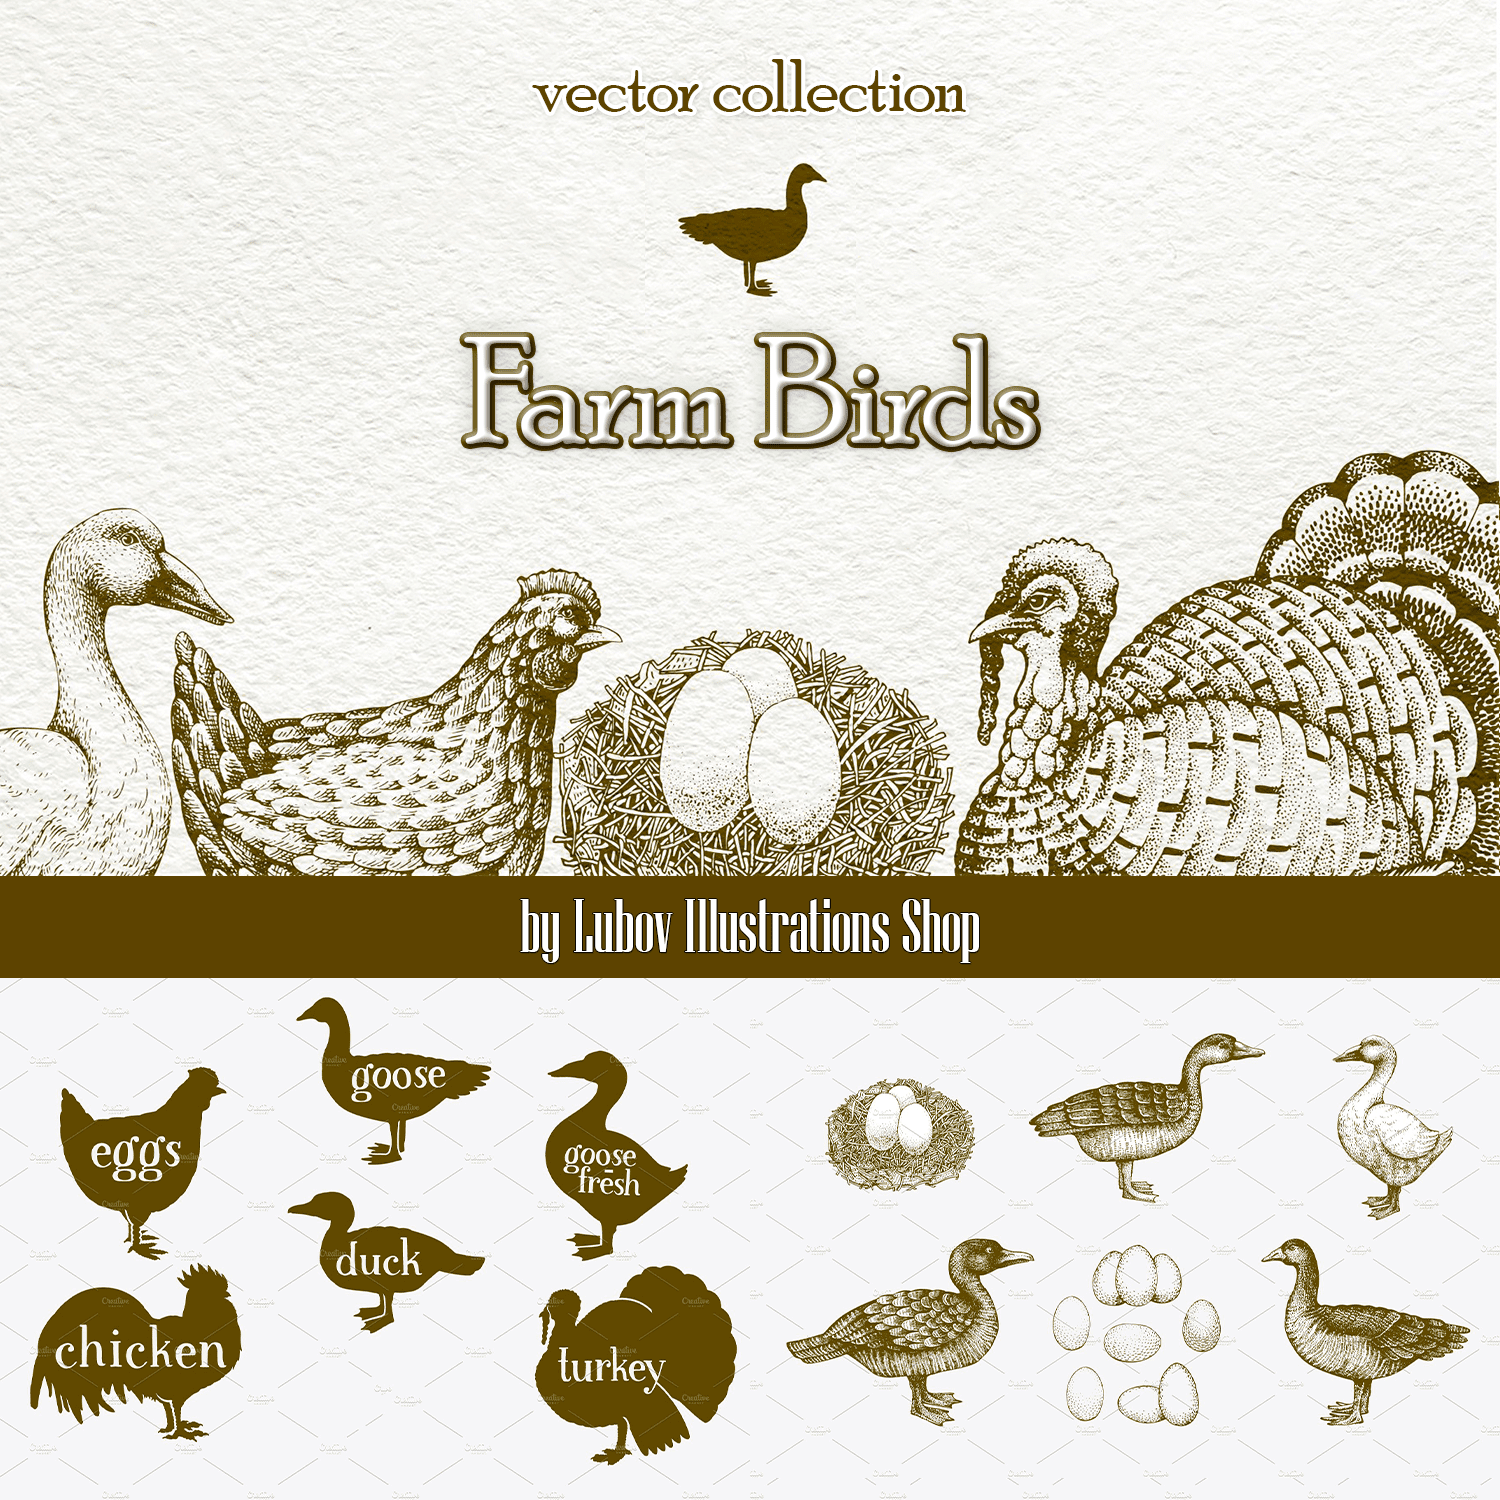 Farm Birds Vector collection.